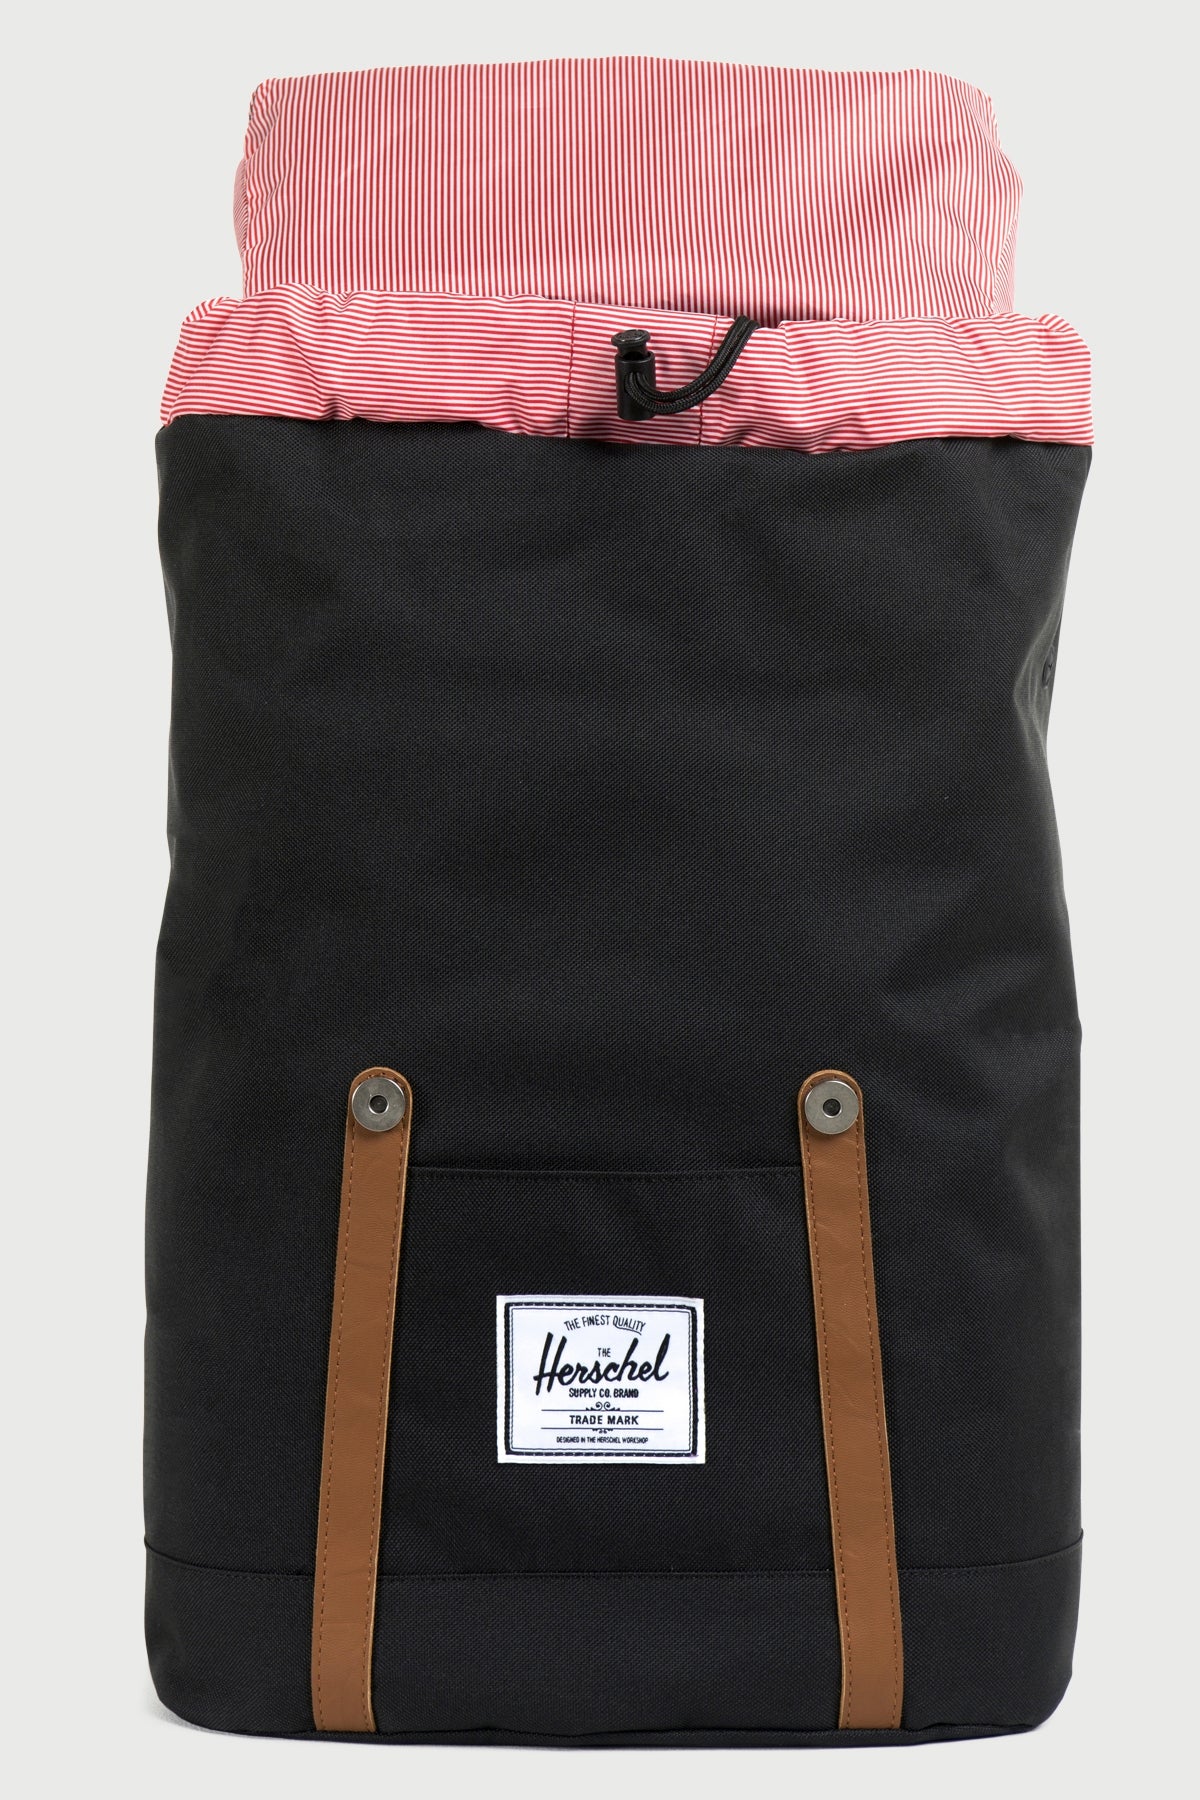 Herschel Supply Co. Retreat Backpack Black